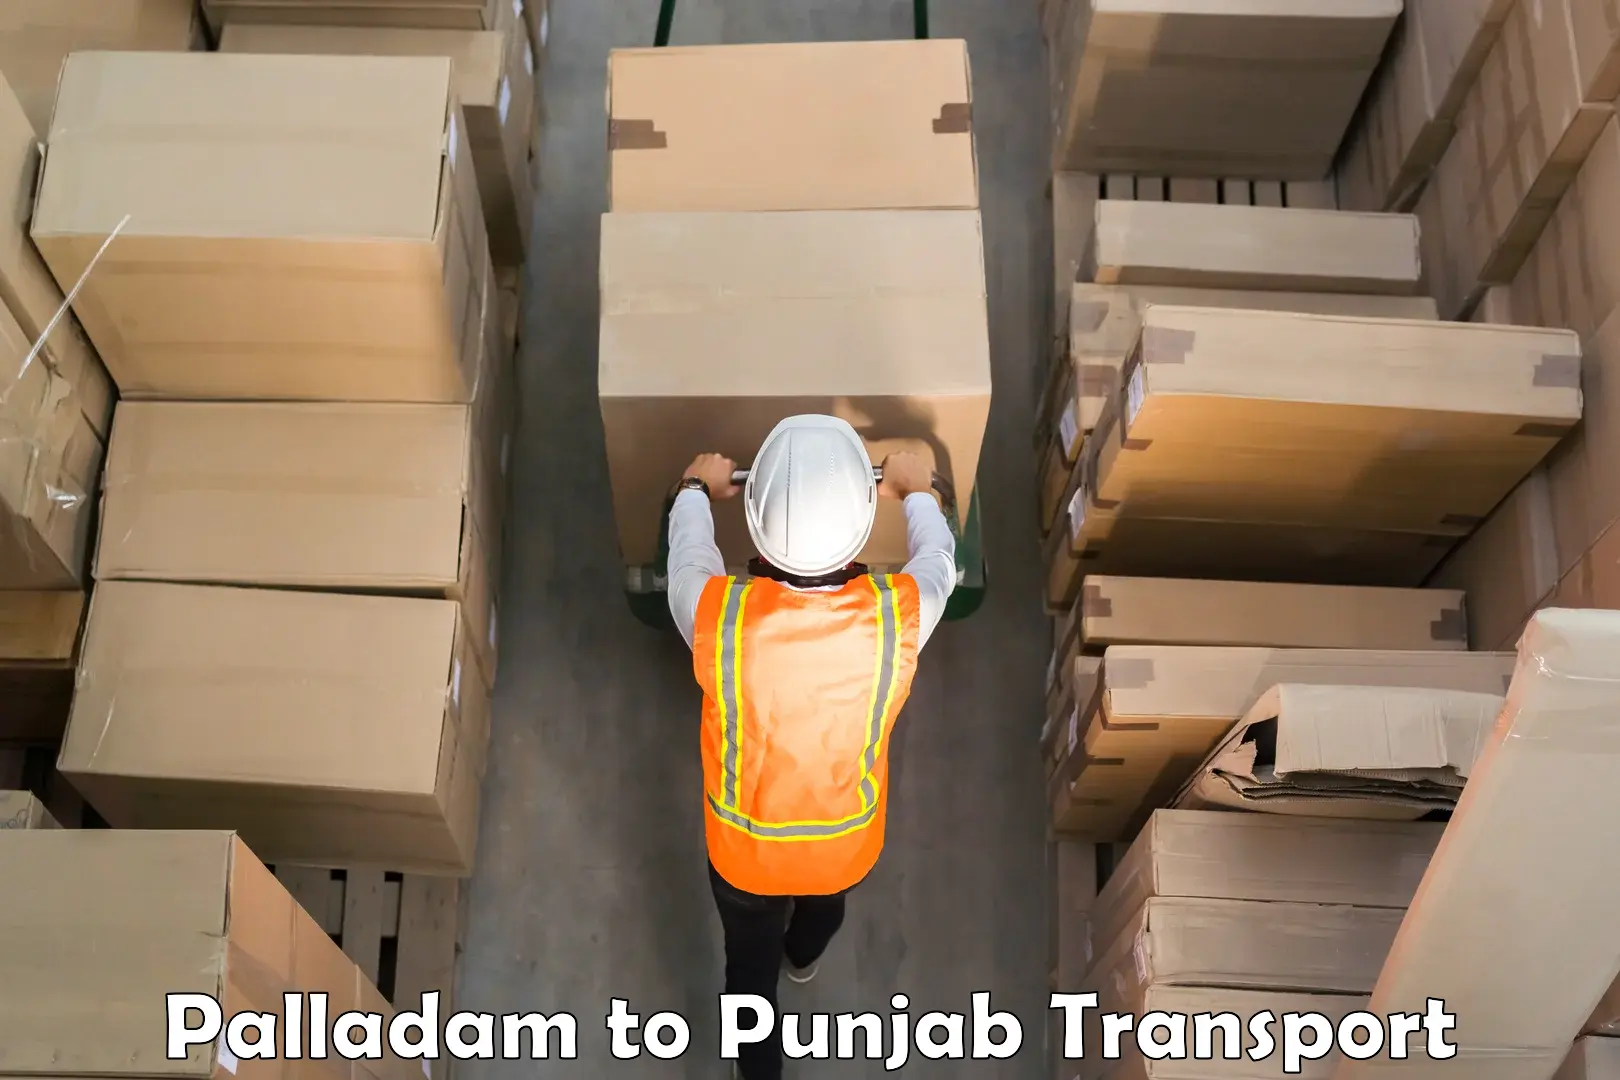 Shipping partner Palladam to Punjab